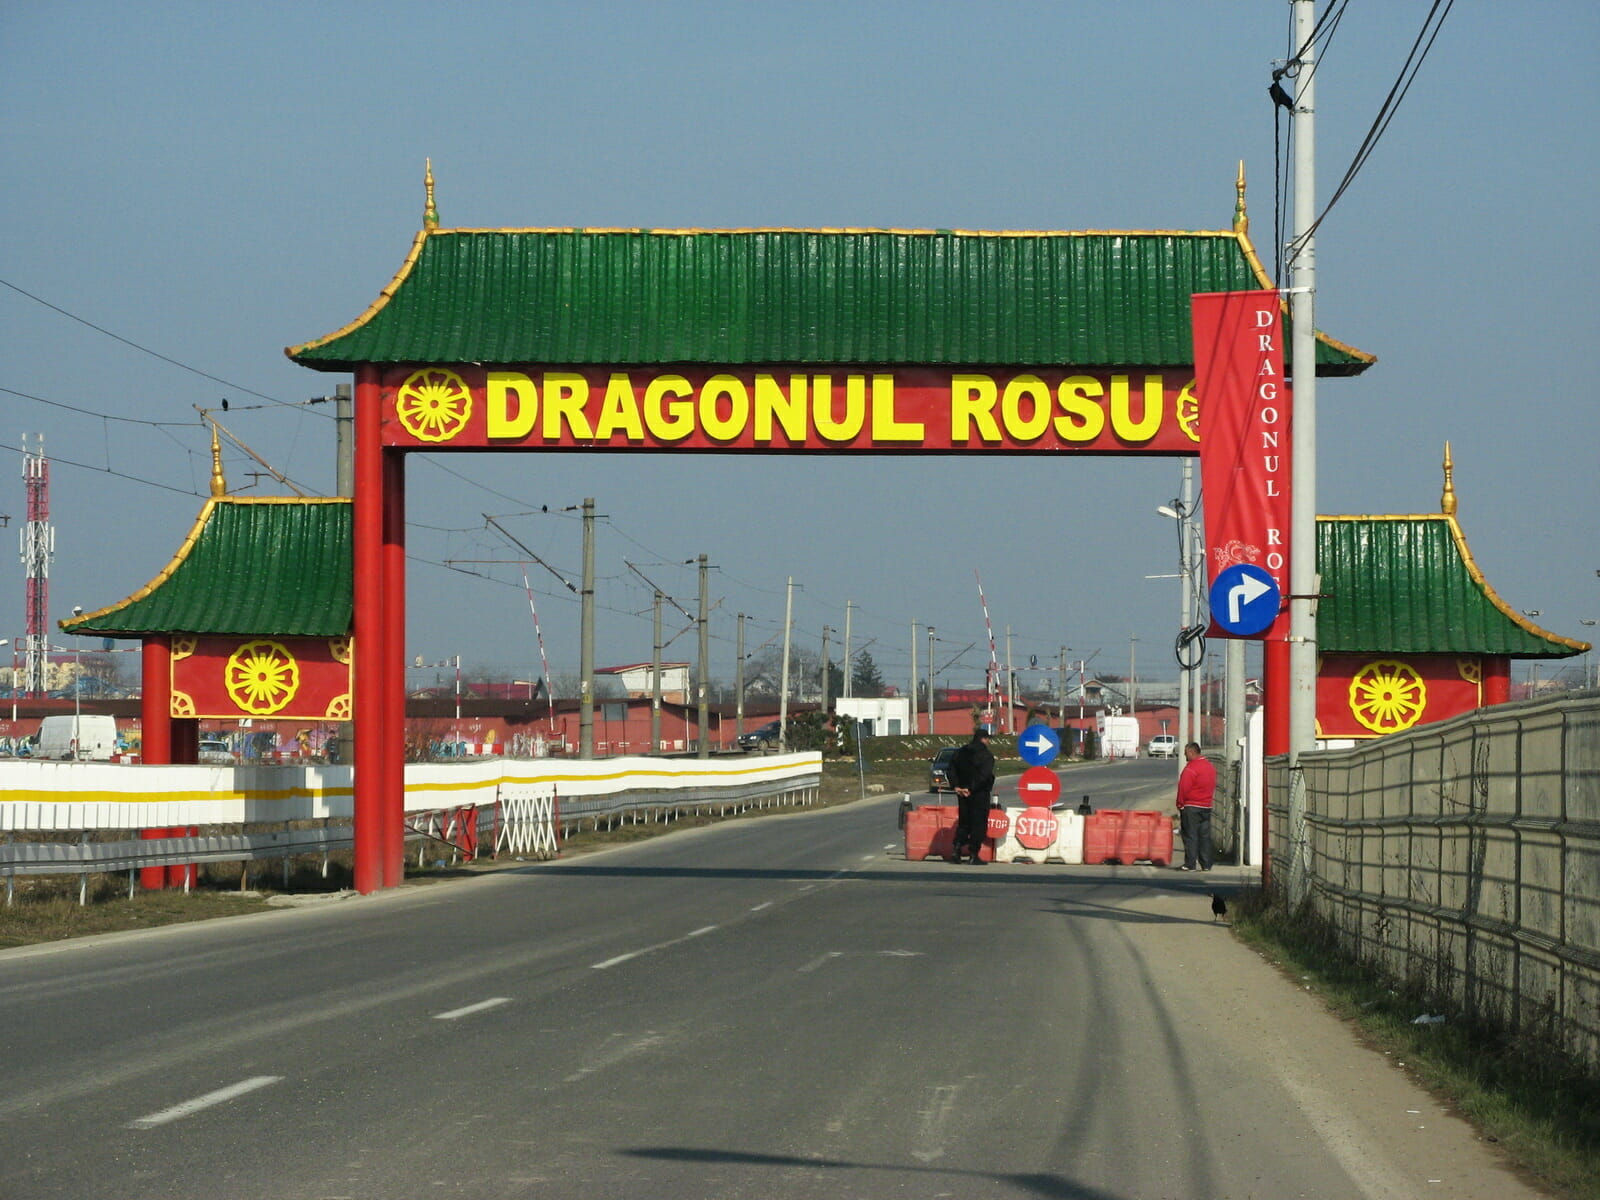 Programul și orarul de funcționare al complexului Dragonul Roșu din București